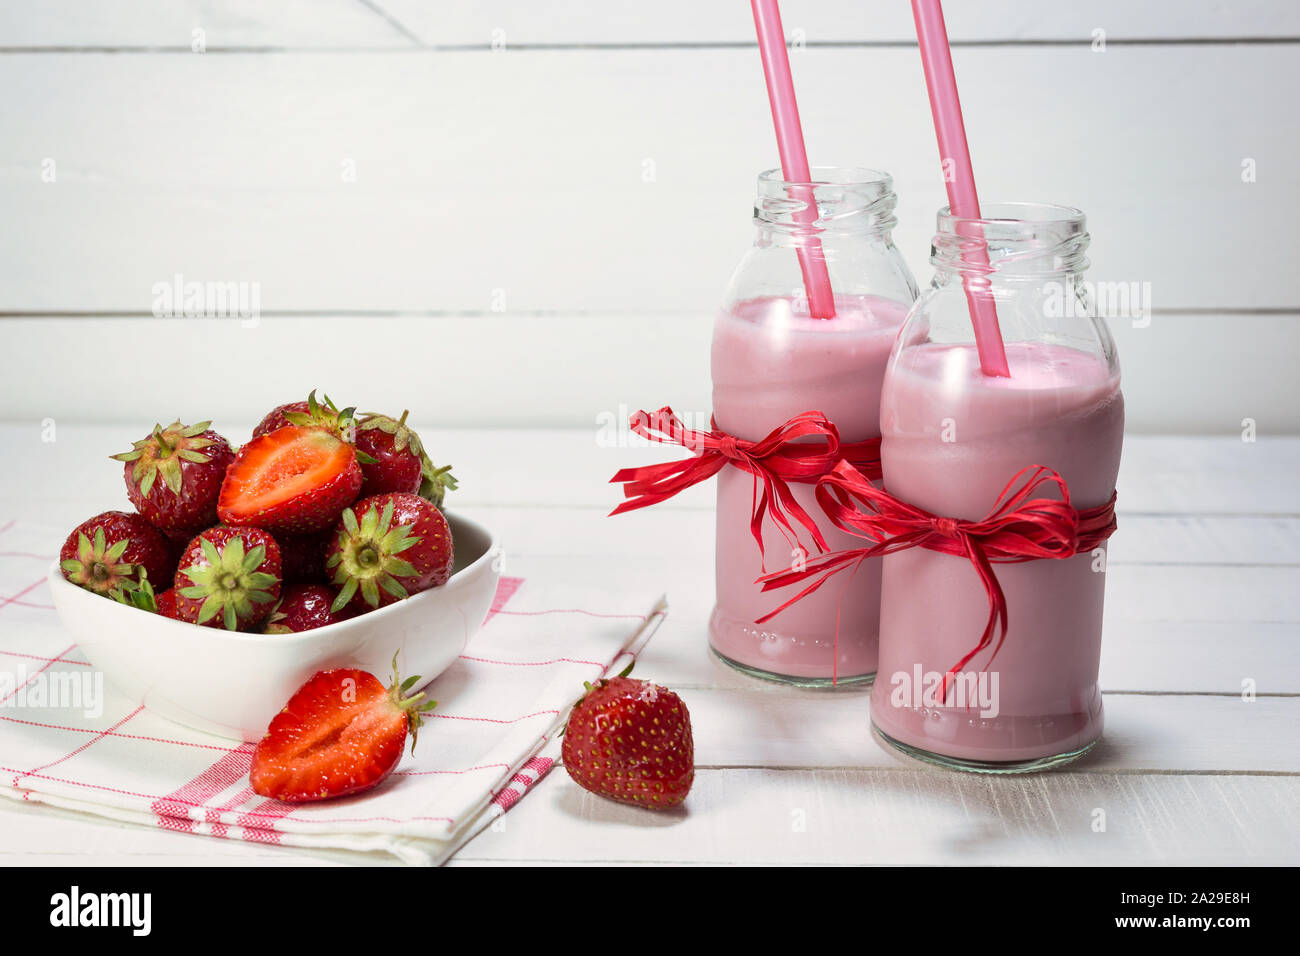 Erdbeer Joghurt in Flaschen und frische Erdbeeren auf einem weißen Holztisch. Gesunde Ernährung Konzept. Stockfoto